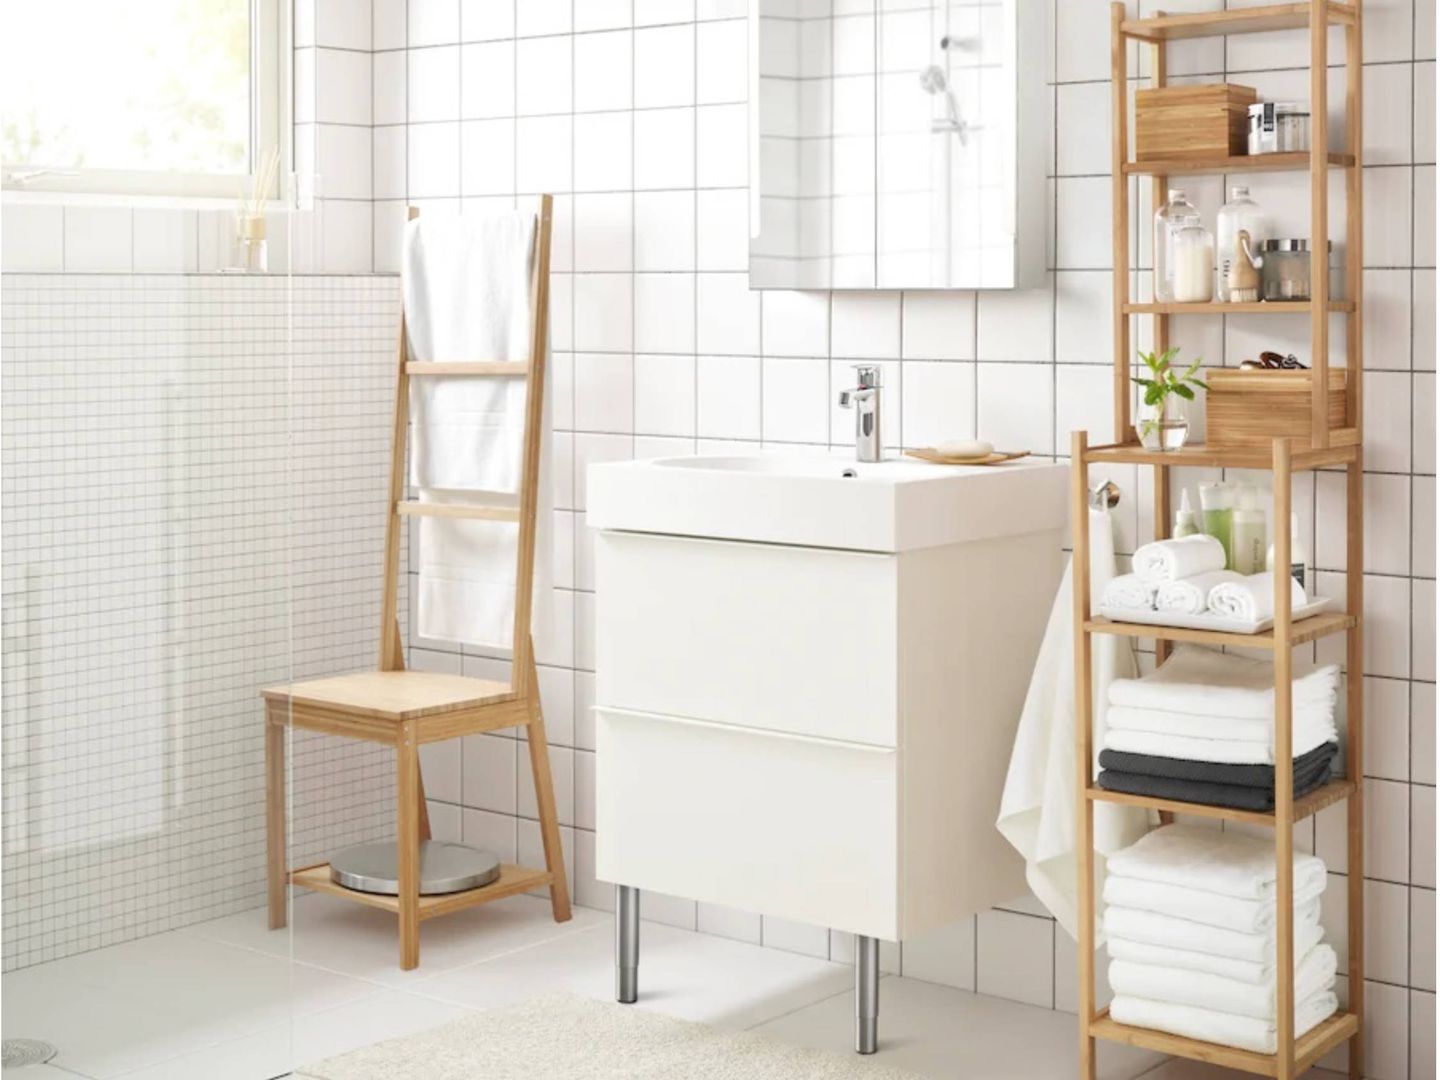 Decora tu baño con los consejos de Ikea. (Cortesía)